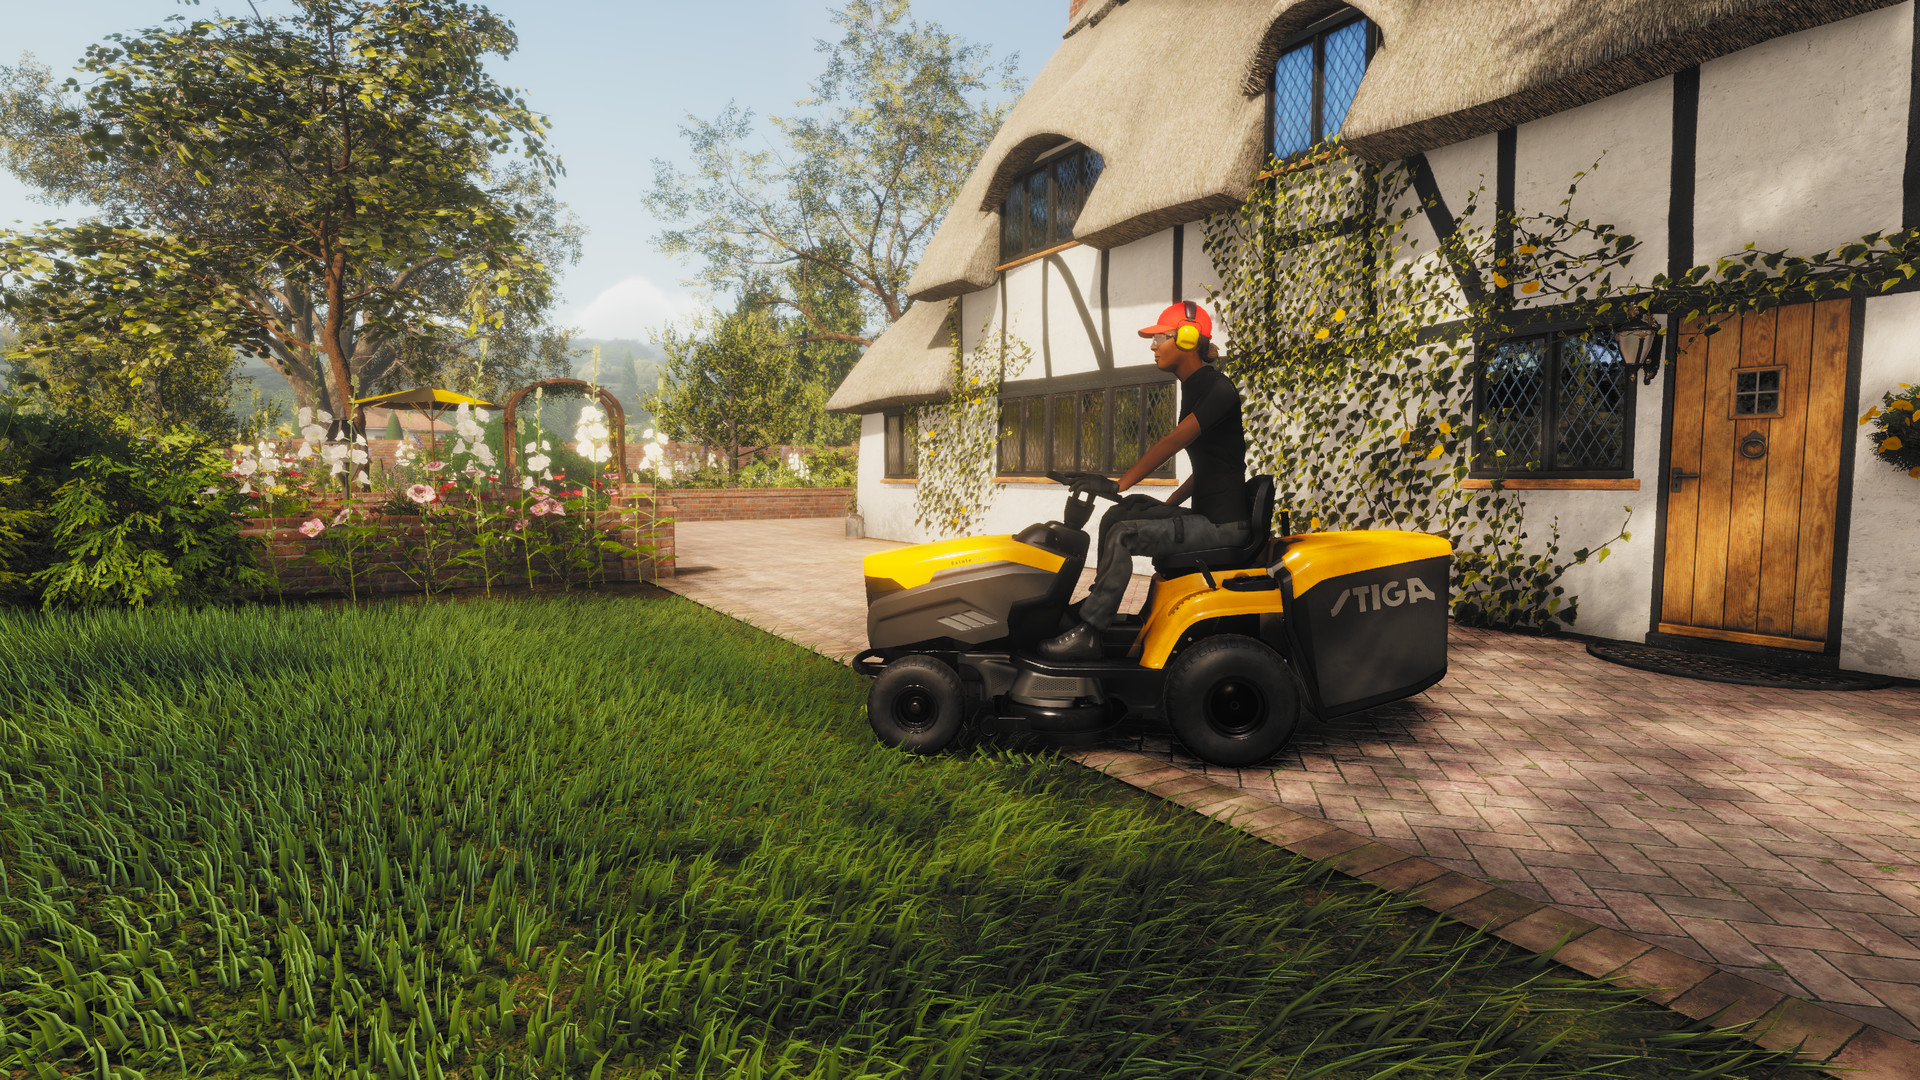 download Lawn Mowing Simulator via torrent